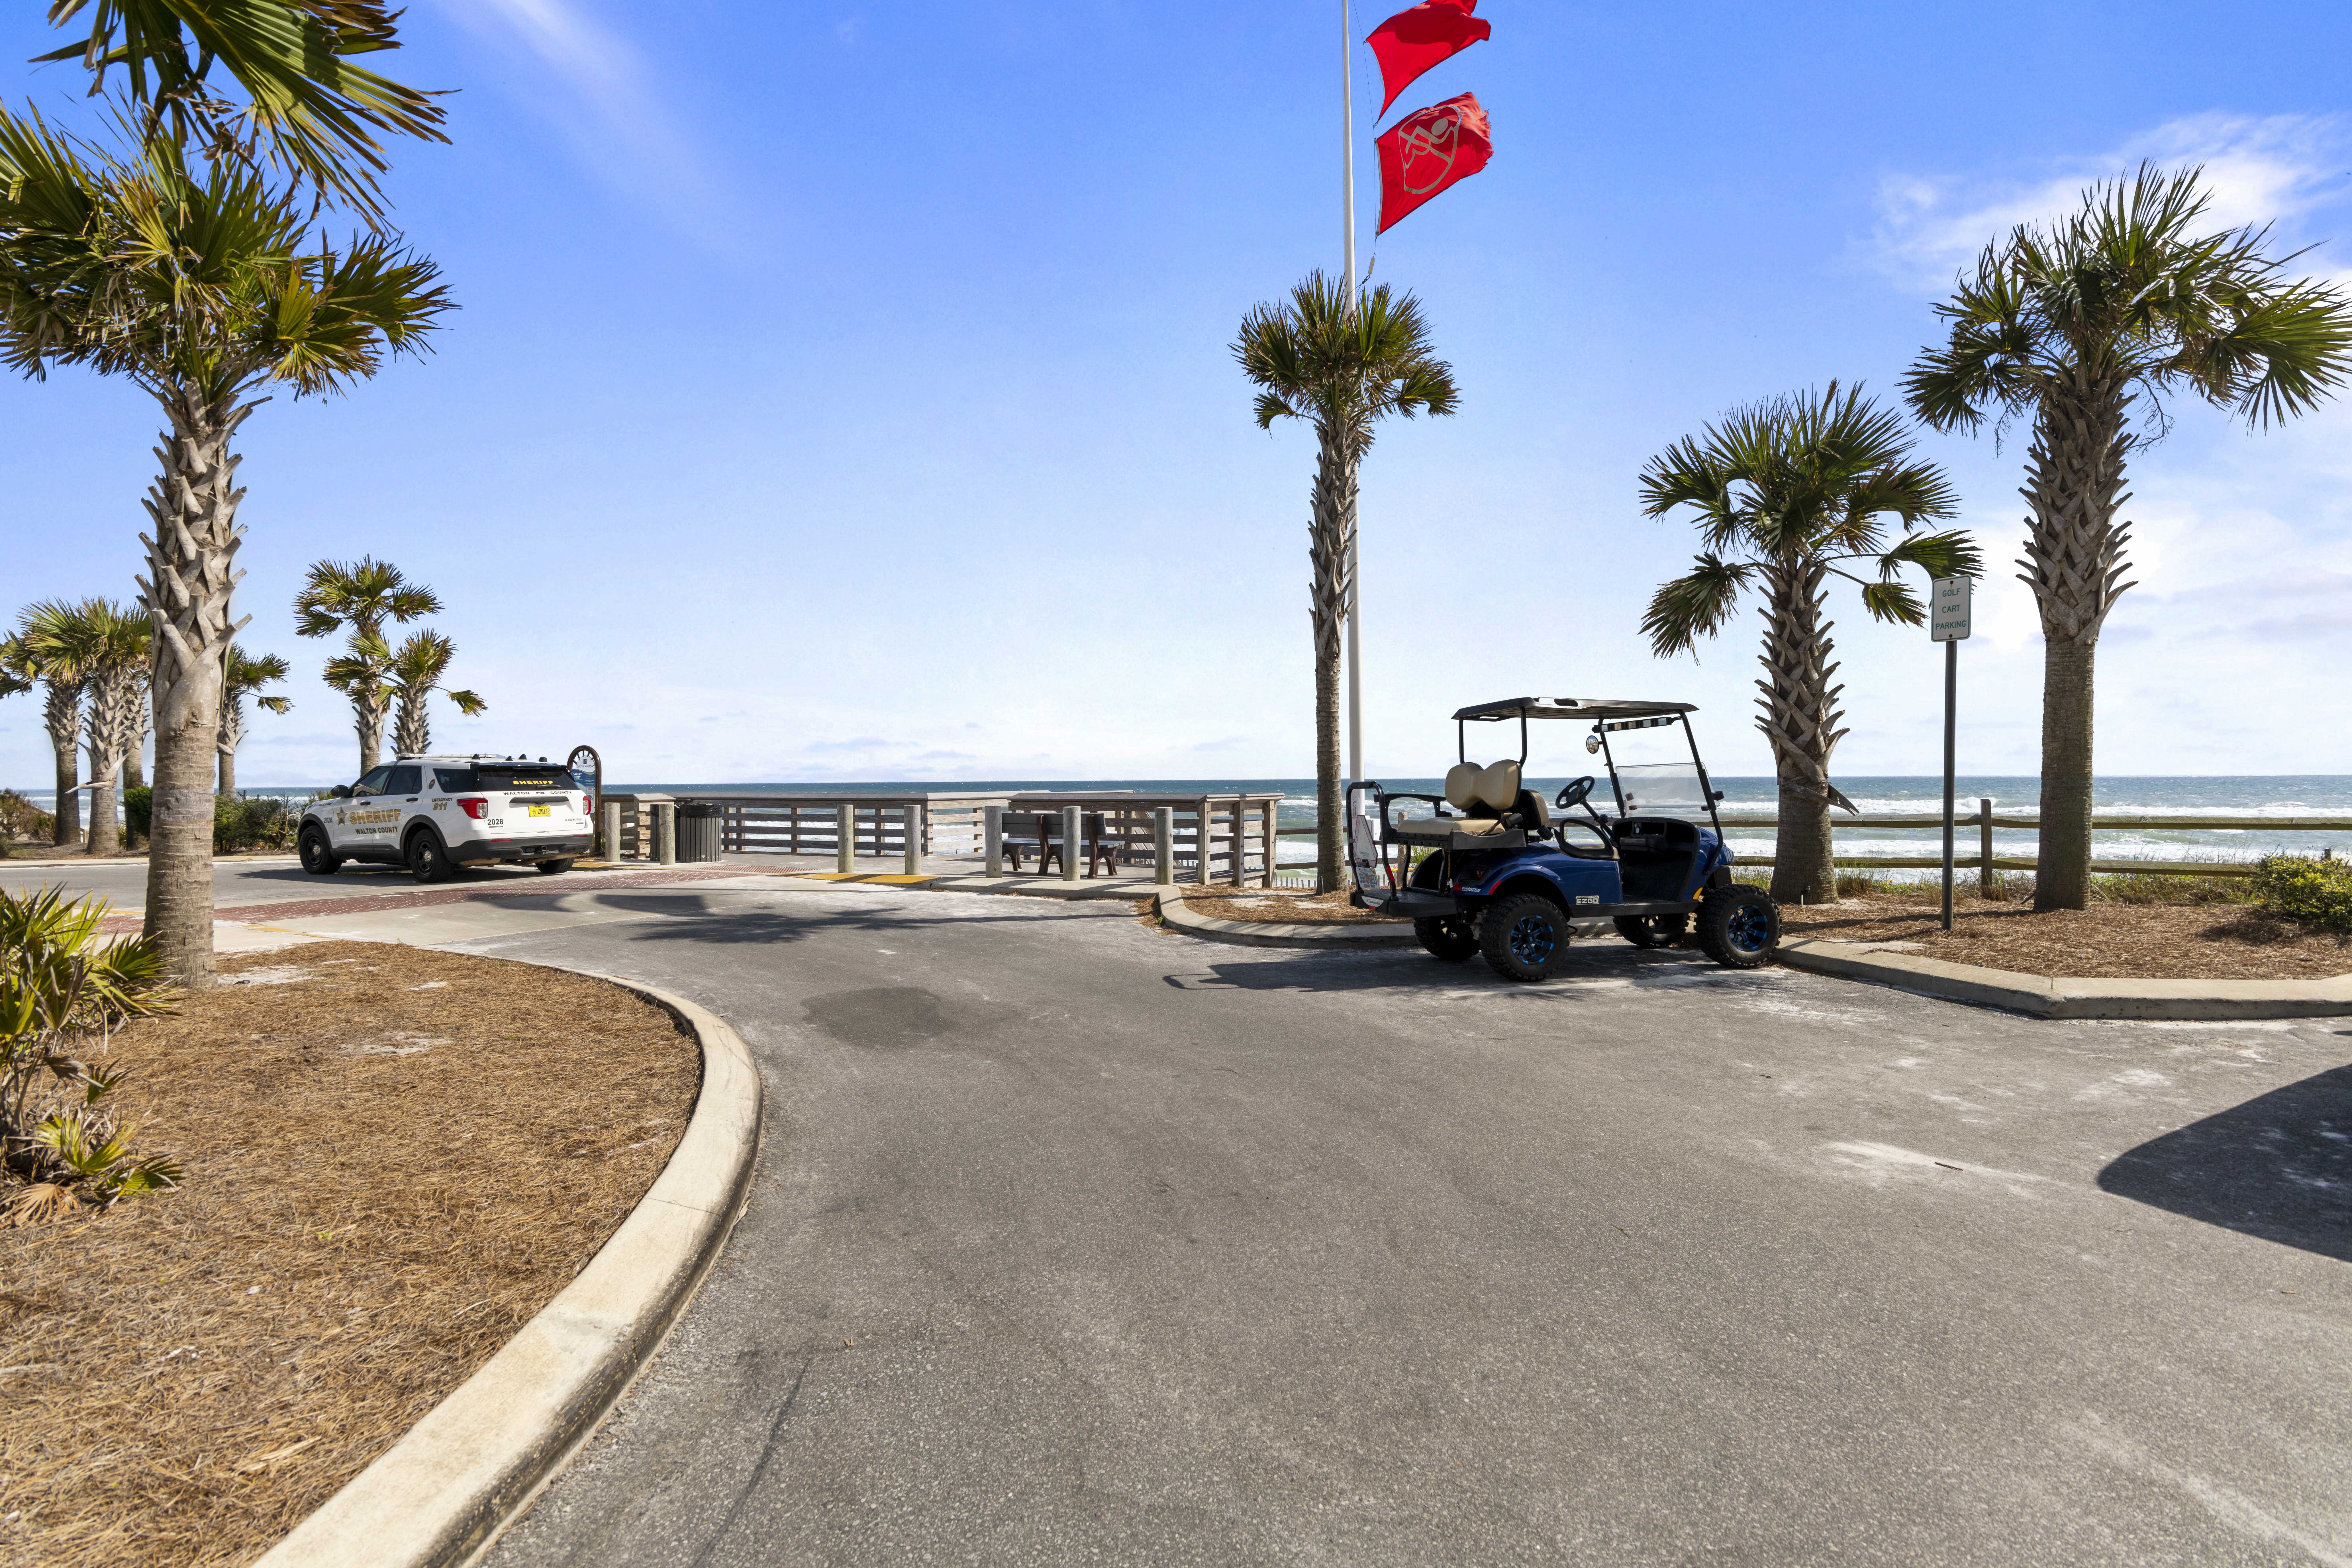 View of Florida Panhandle beach parking